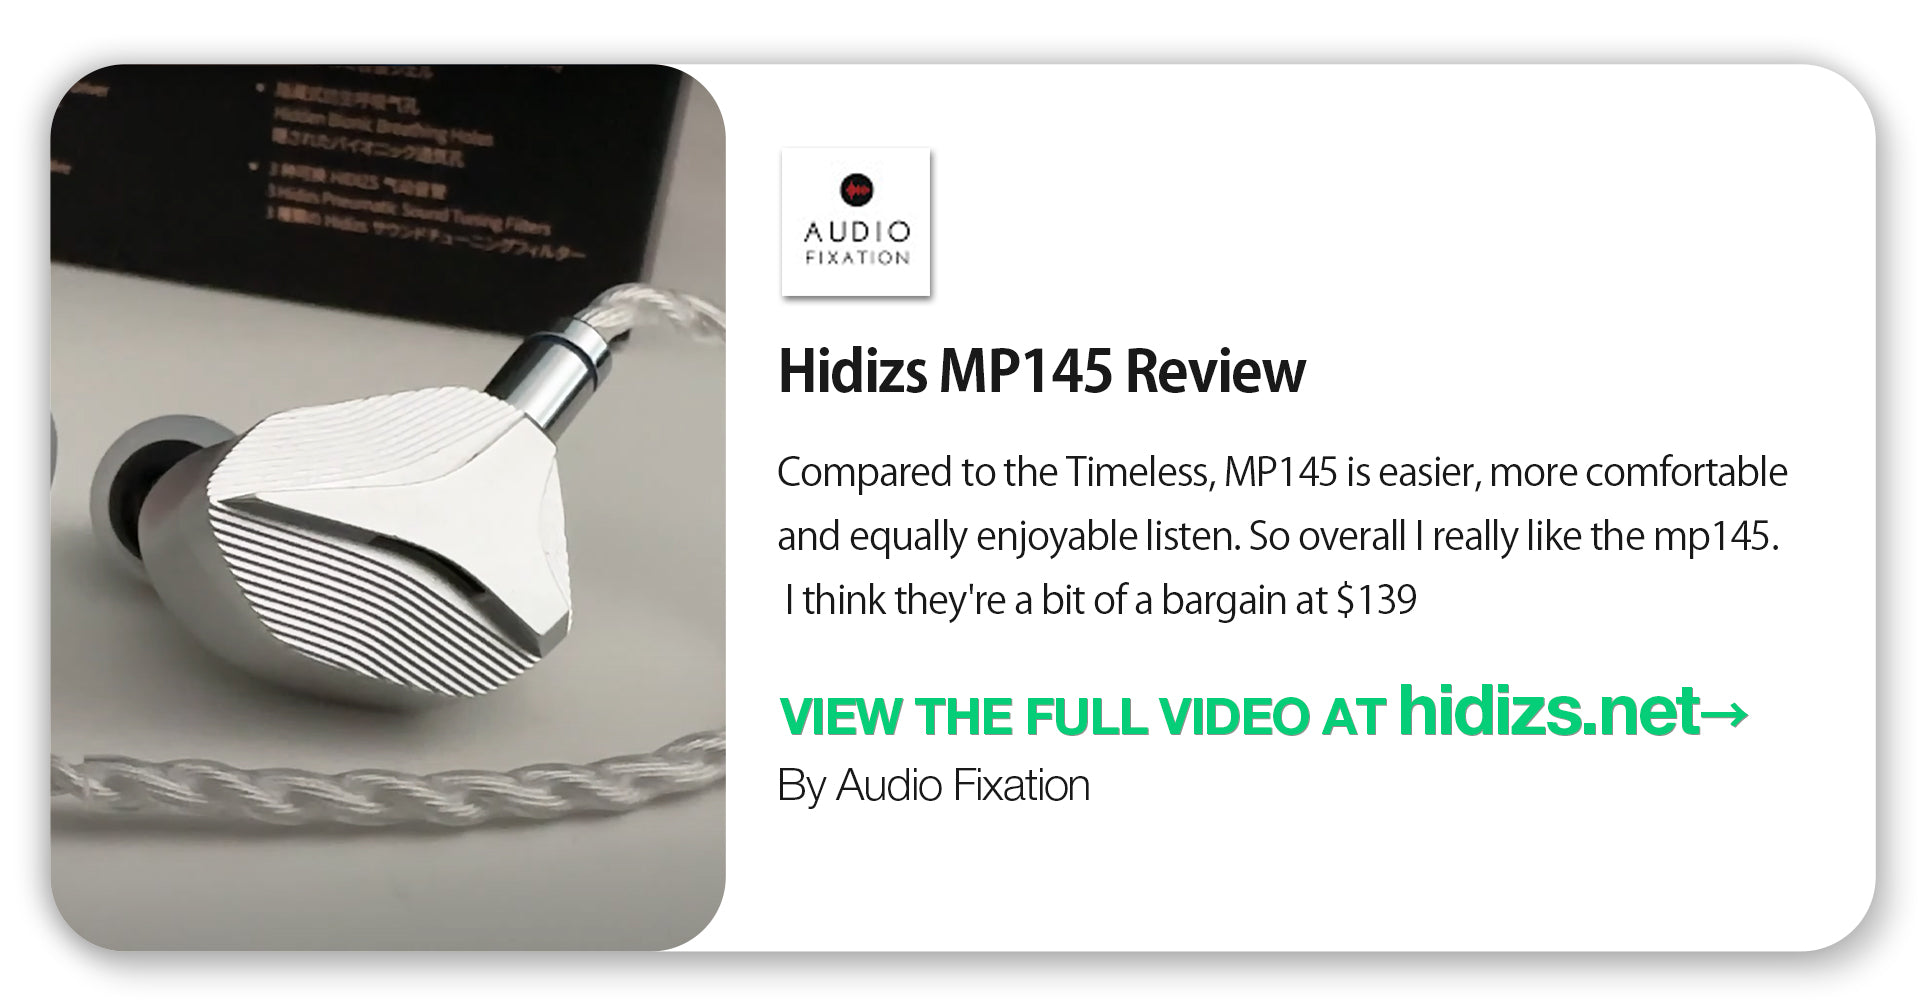 Hidizs MP145 Review - Audio Fixation